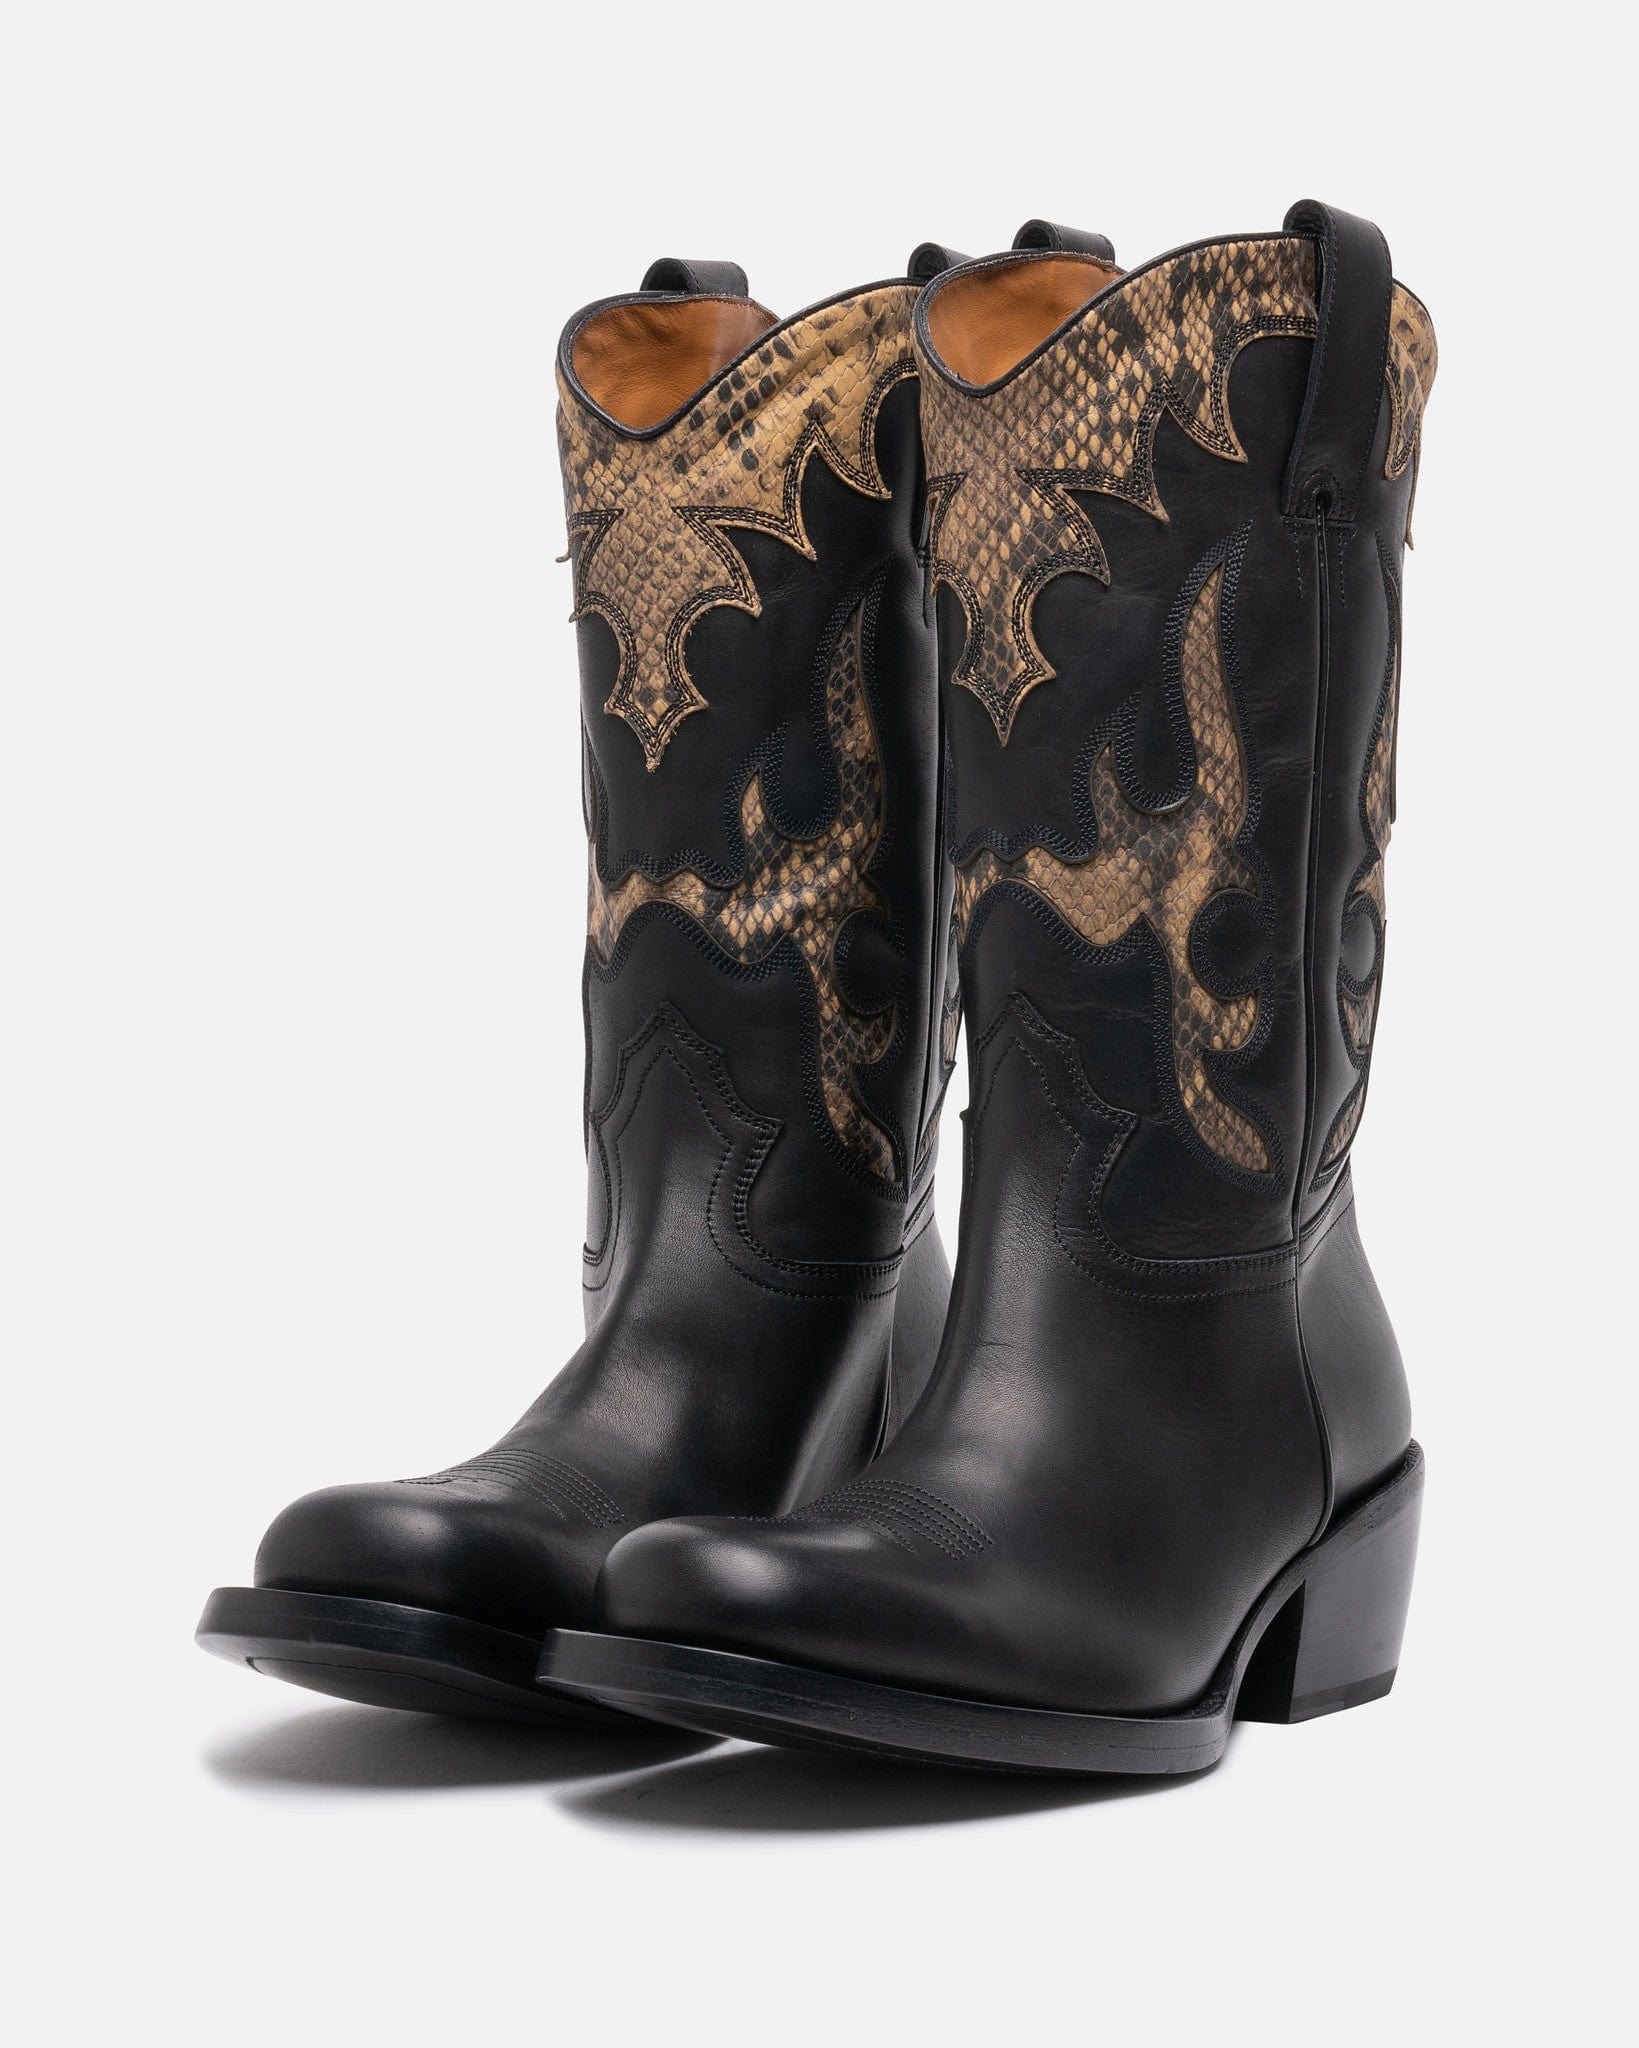 Dries Van Noten Men's Boots Cowboy Boot in Black